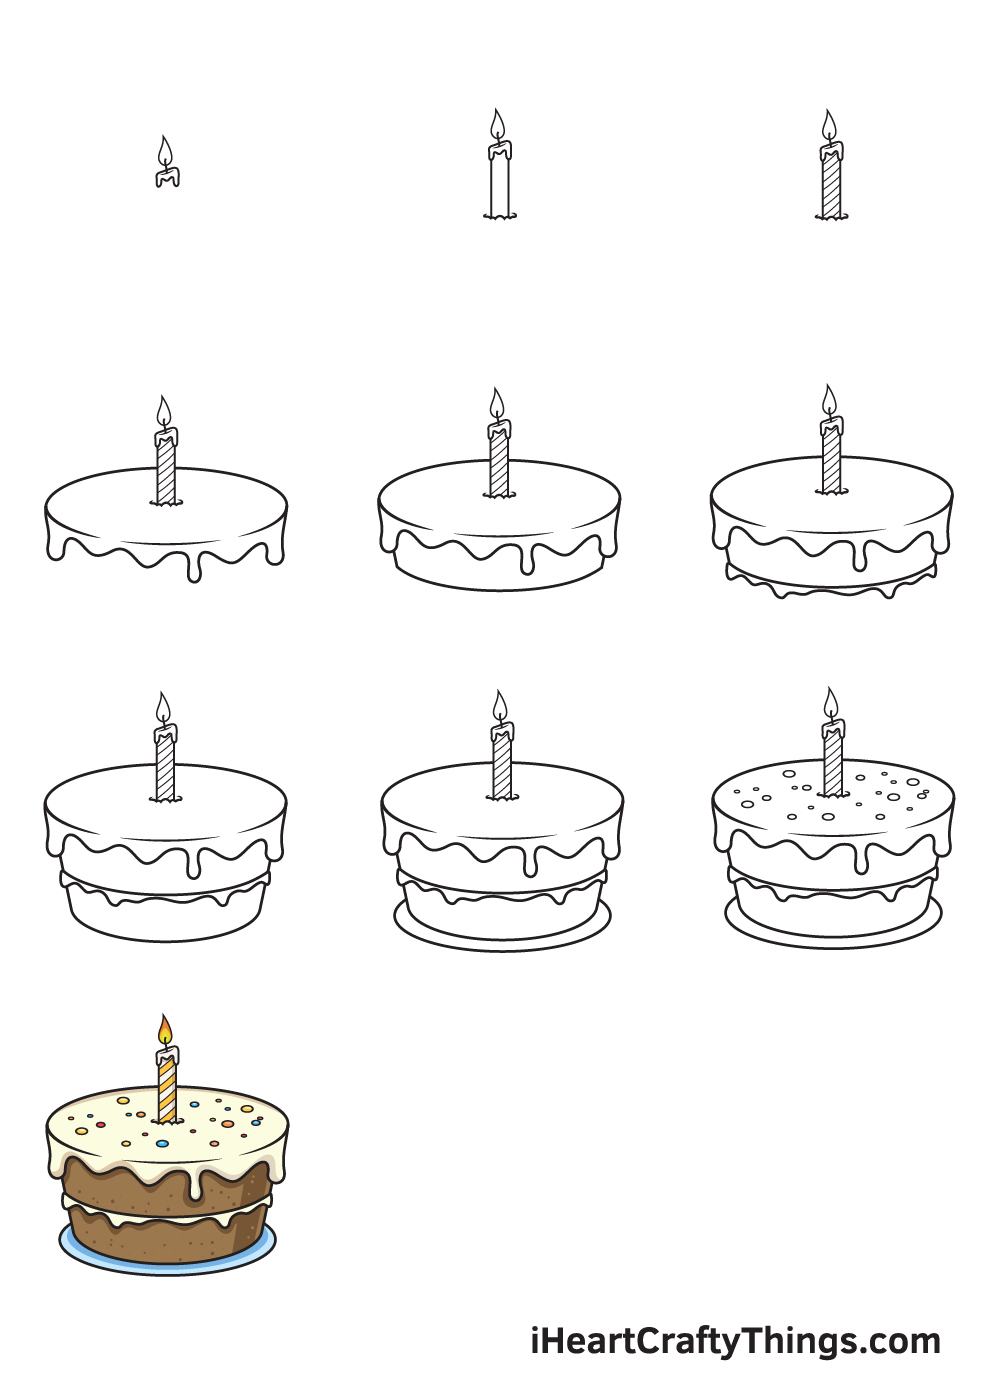 Hướng dẫn cách vẽ bánh sinh nhật đơn giản với 9 bước cơ bản